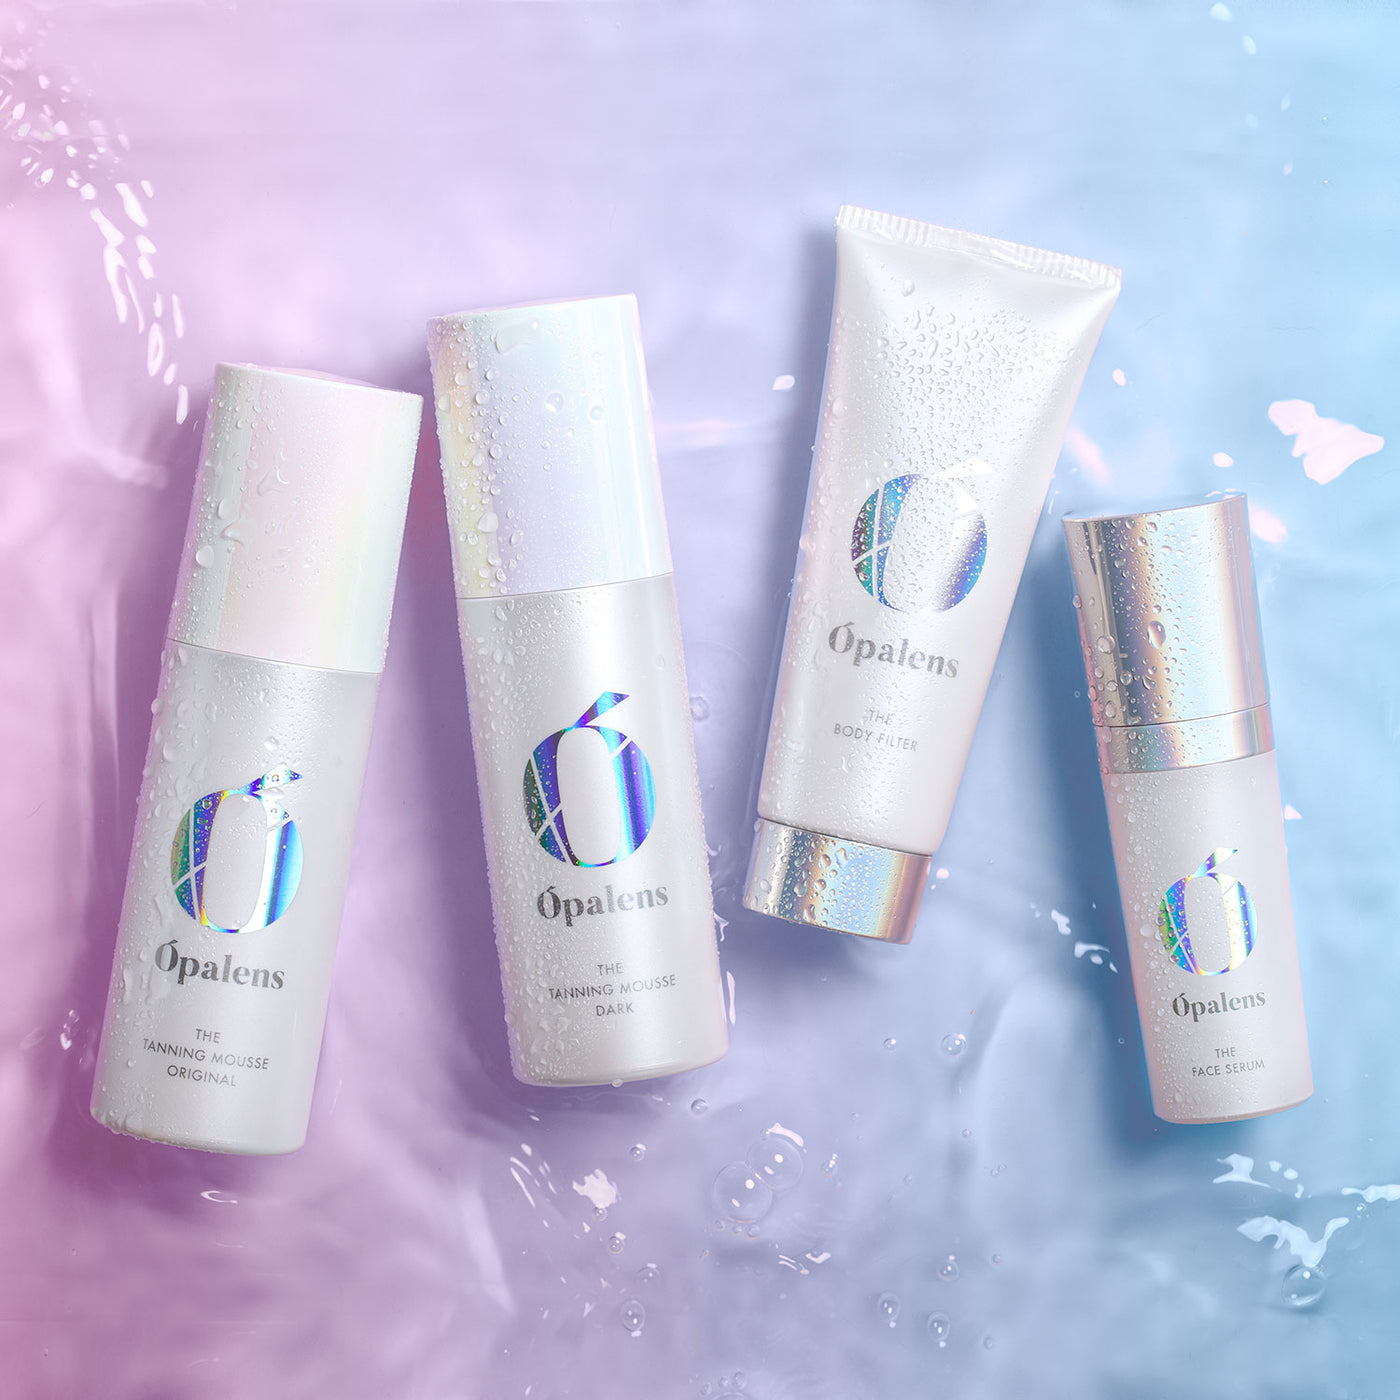 Opalens Beauty eCommerce Shopify Marketing Case Study